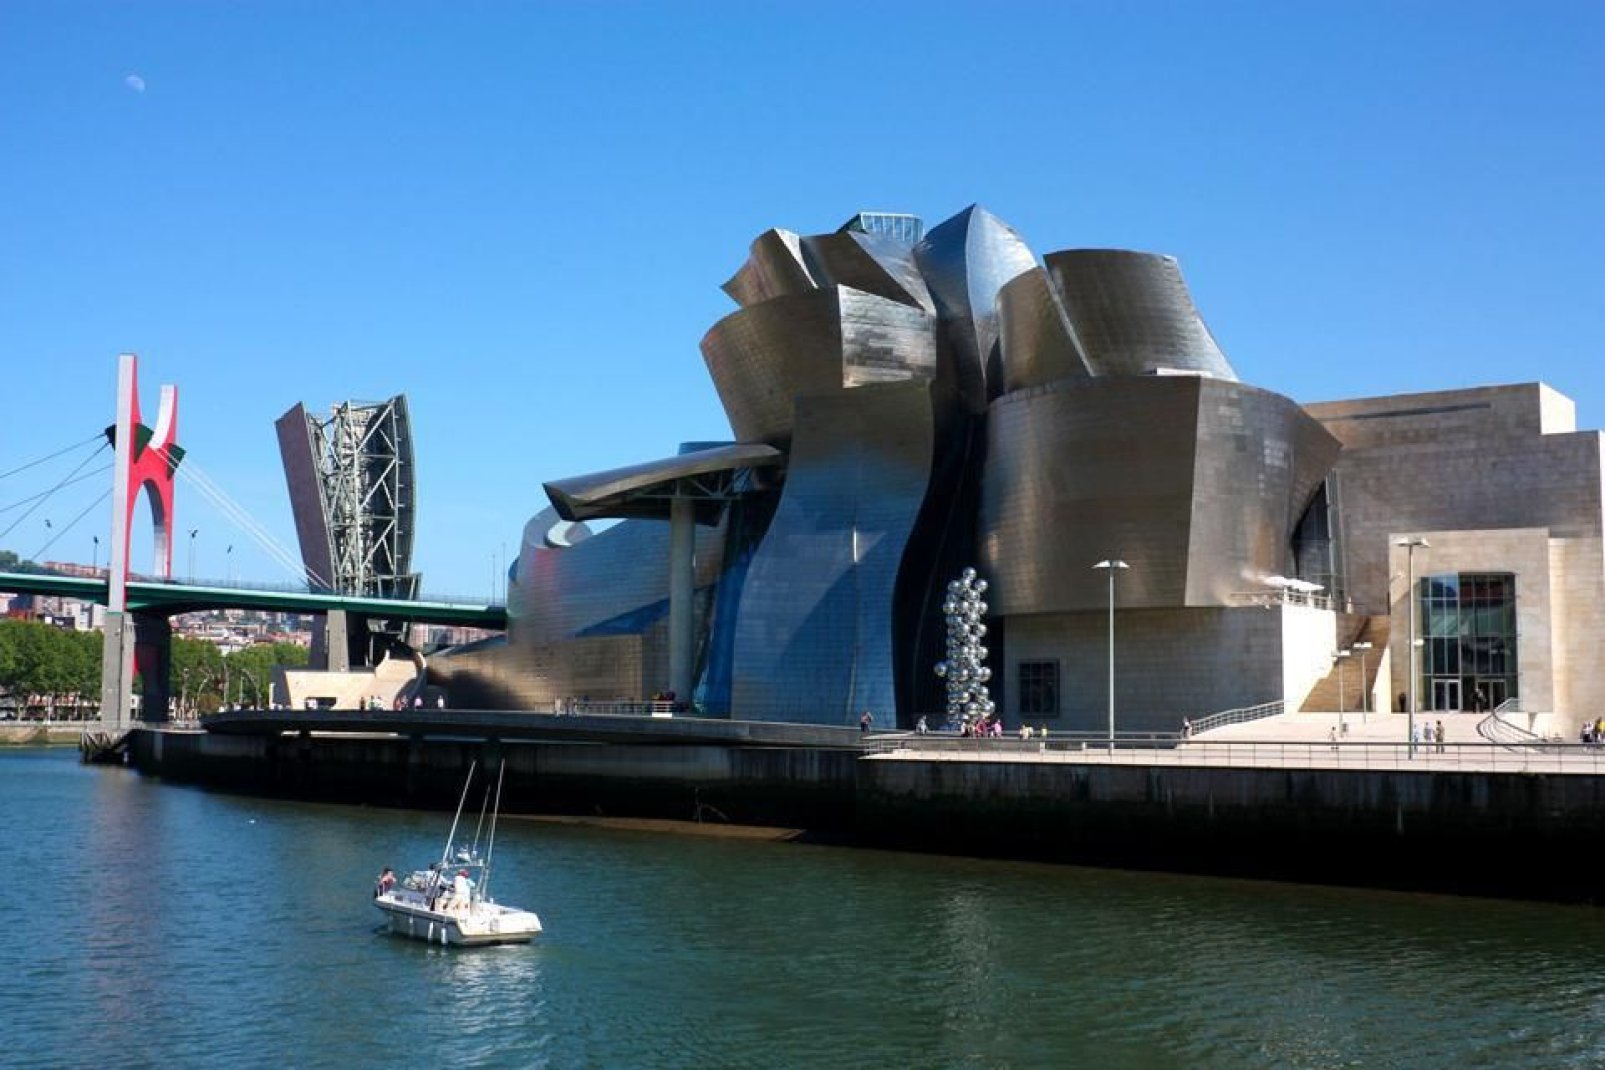 El edificio pensado y diseñado por Frank Gehry simboliza, por su forma y los materiales utilizados, la industria naval.